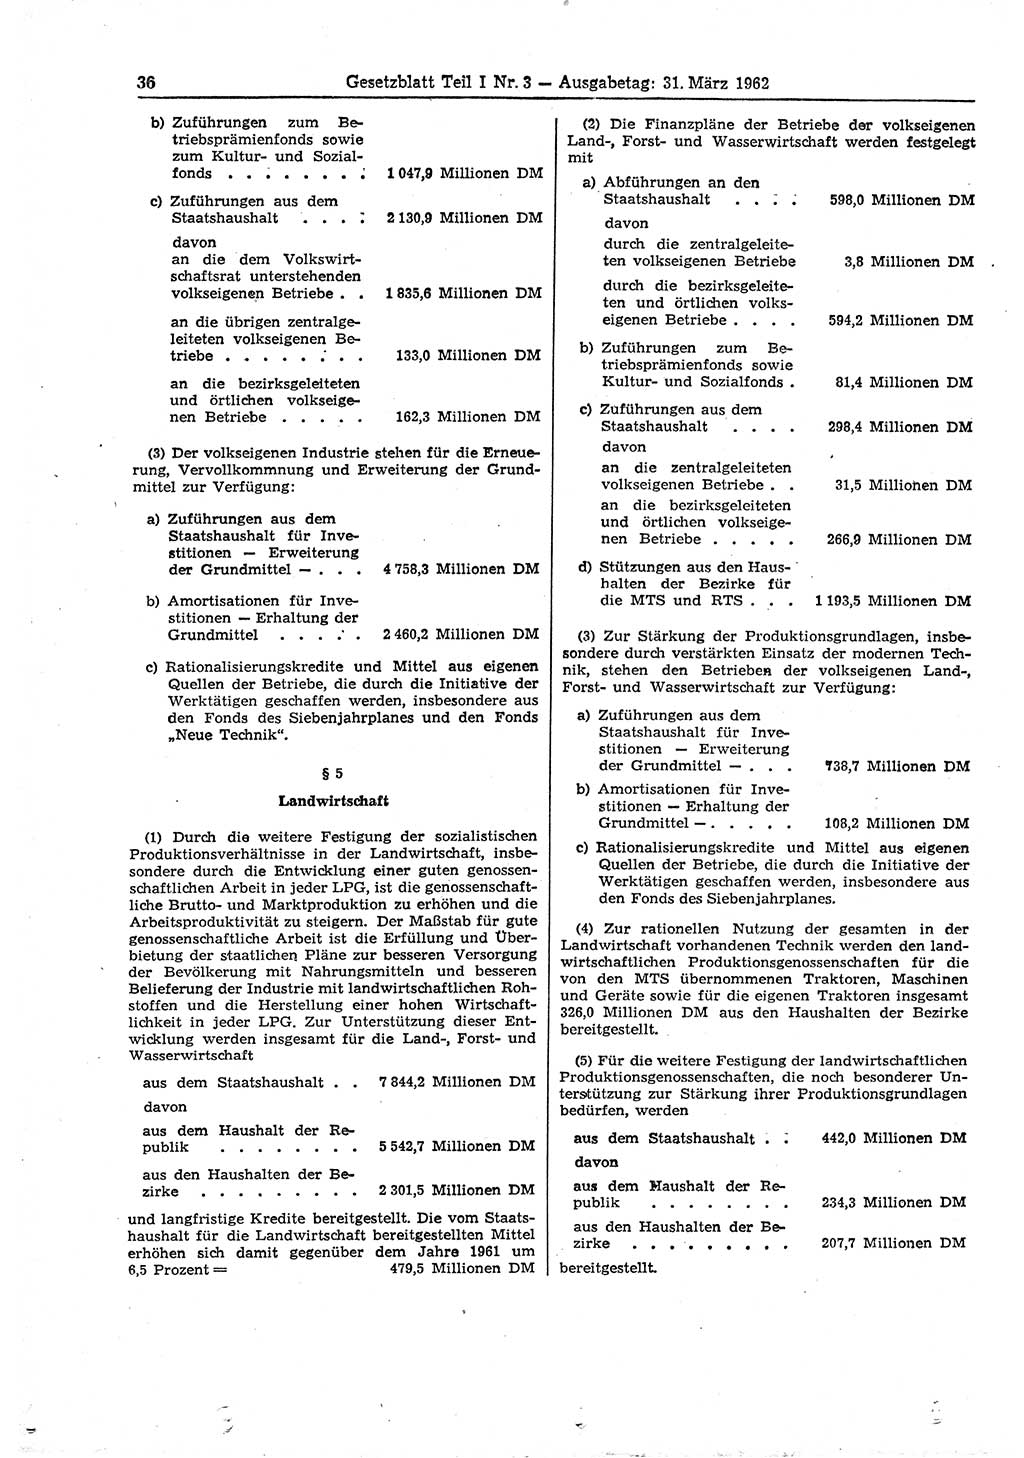 Gesetzblatt (GBl.) der Deutschen Demokratischen Republik (DDR) Teil Ⅰ 1962, Seite 36 (GBl. DDR Ⅰ 1962, S. 36)